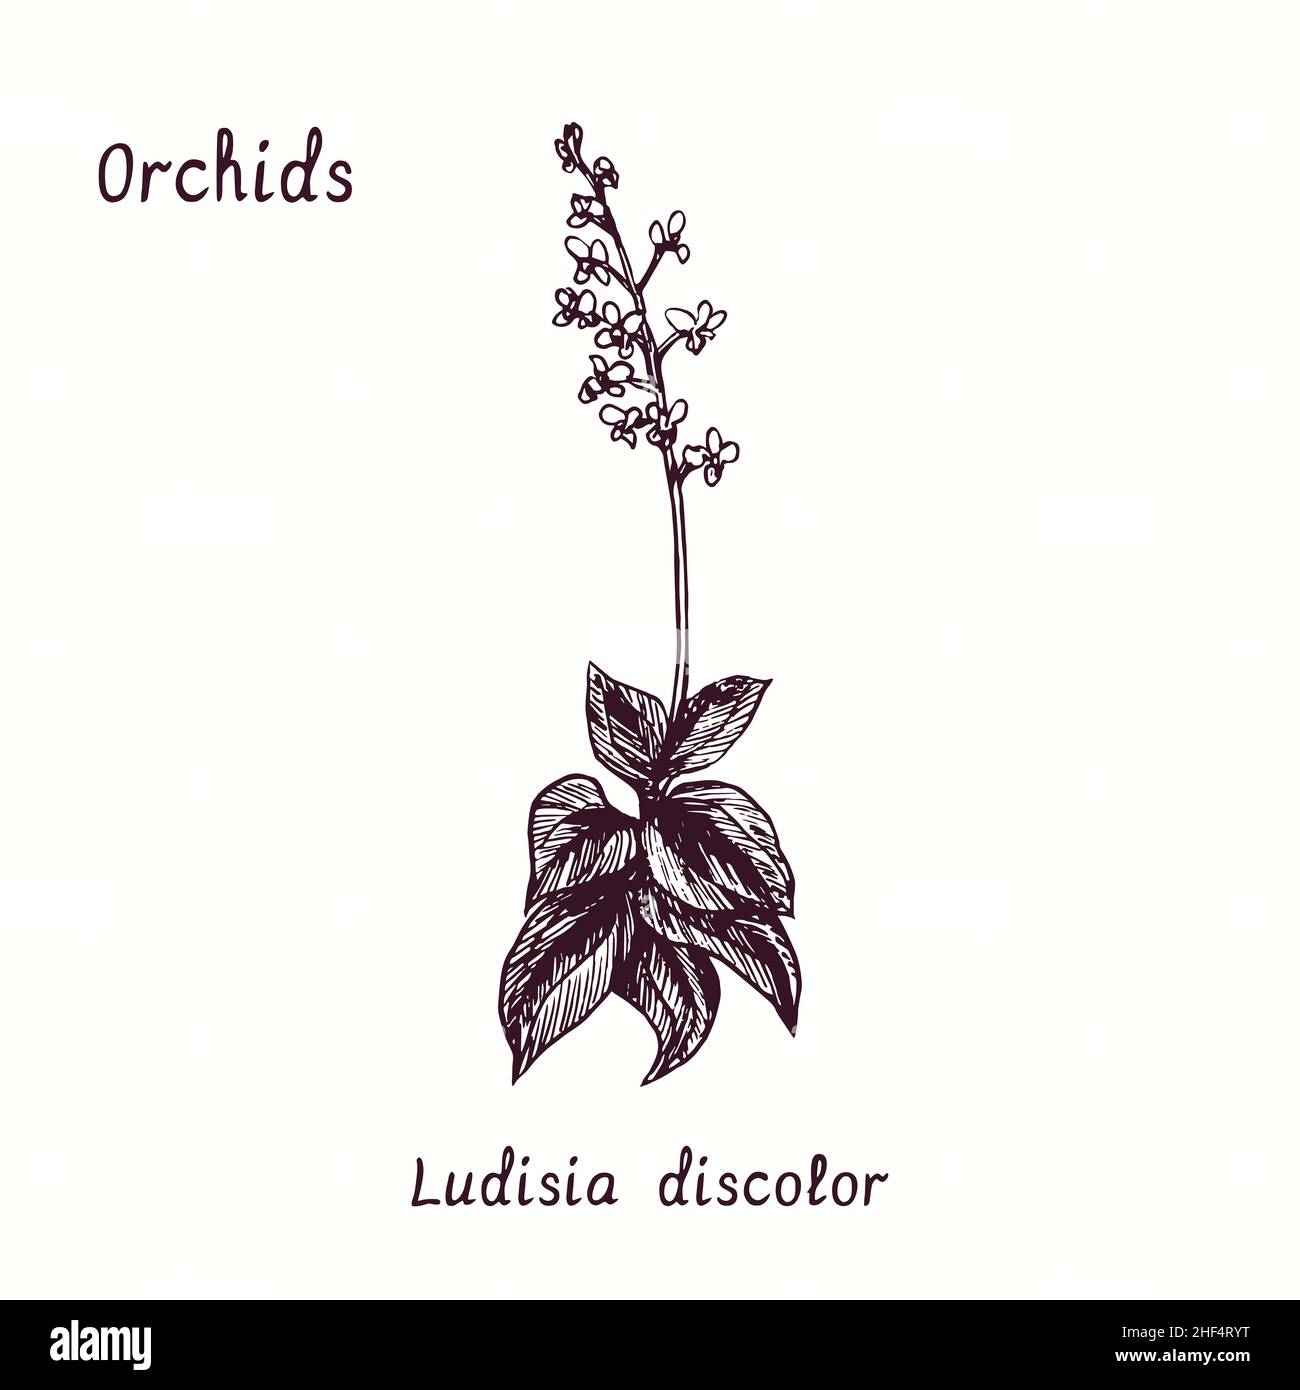 Ludisia discolor (Jewel Orchid) Orchideen Blume Sammlung. Tusche schwarz-weiße Doodle-Zeichnung im Holzschnitt-Stil mit Inschrift. Stockfoto